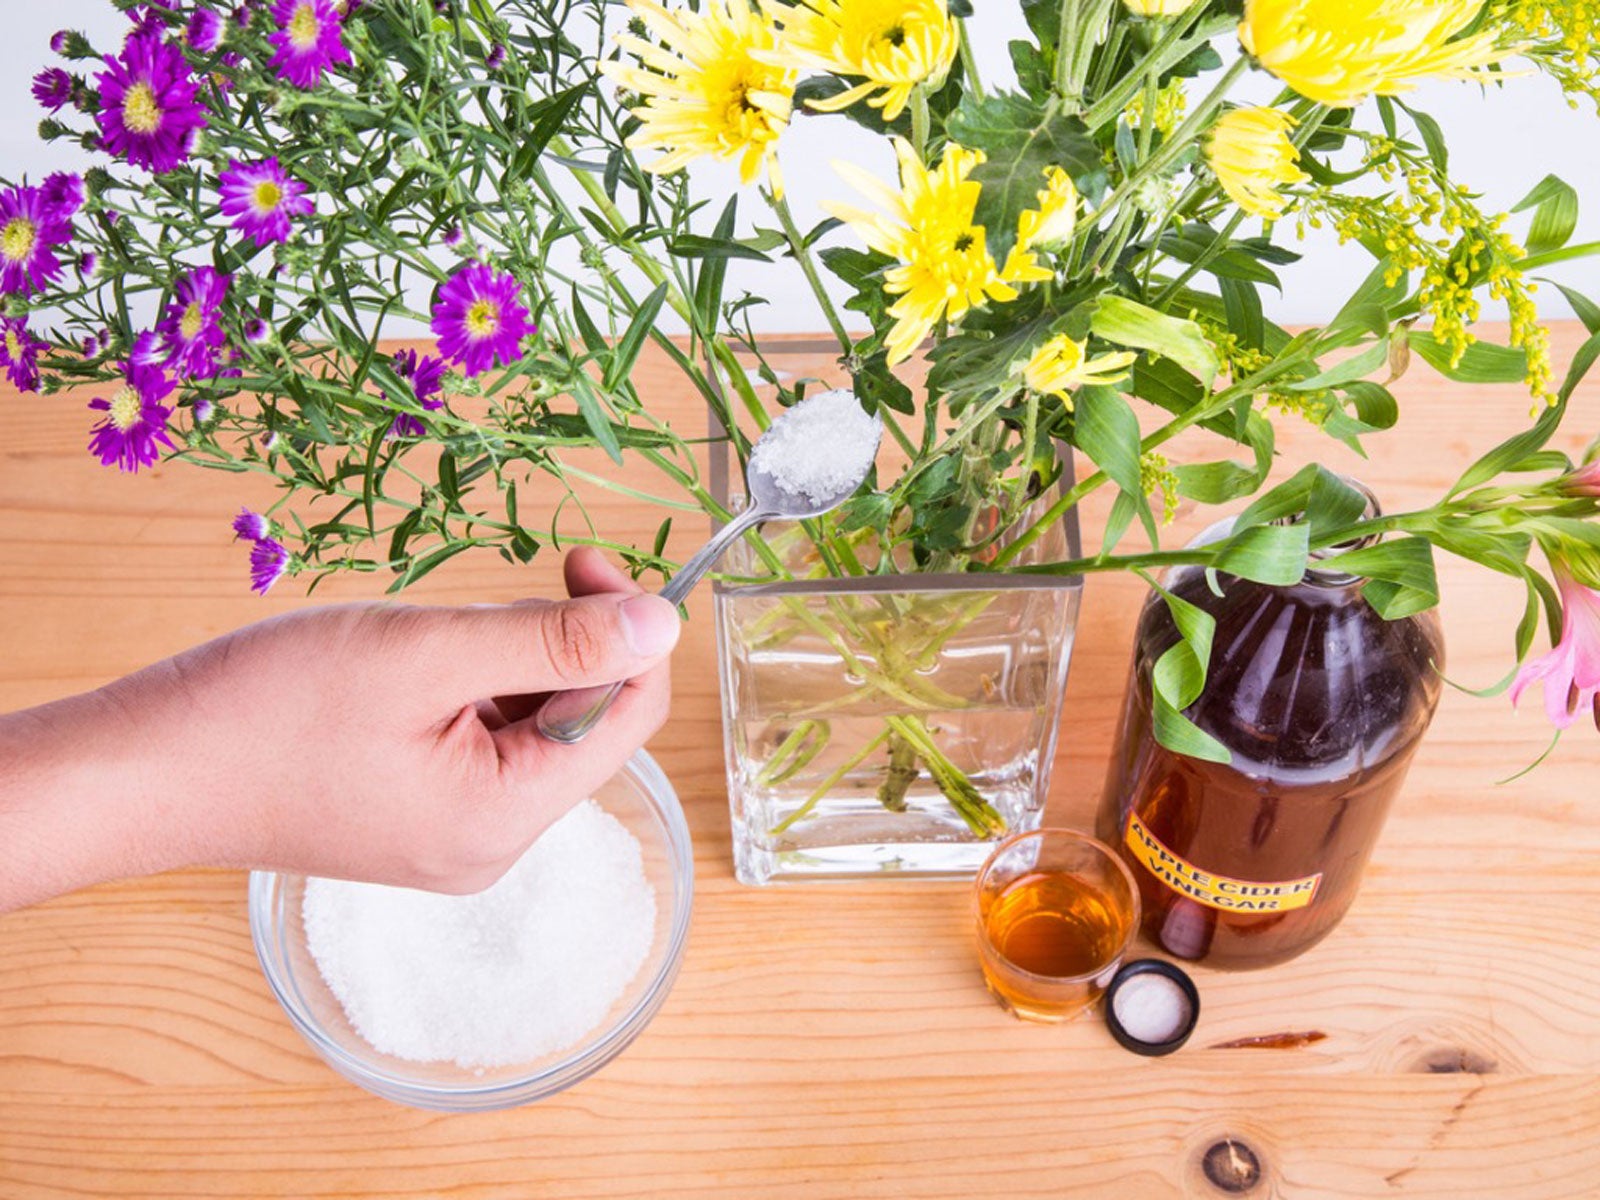 How to Make Flowers Last Longer in Vase - Keep Cut Flowers Fresh